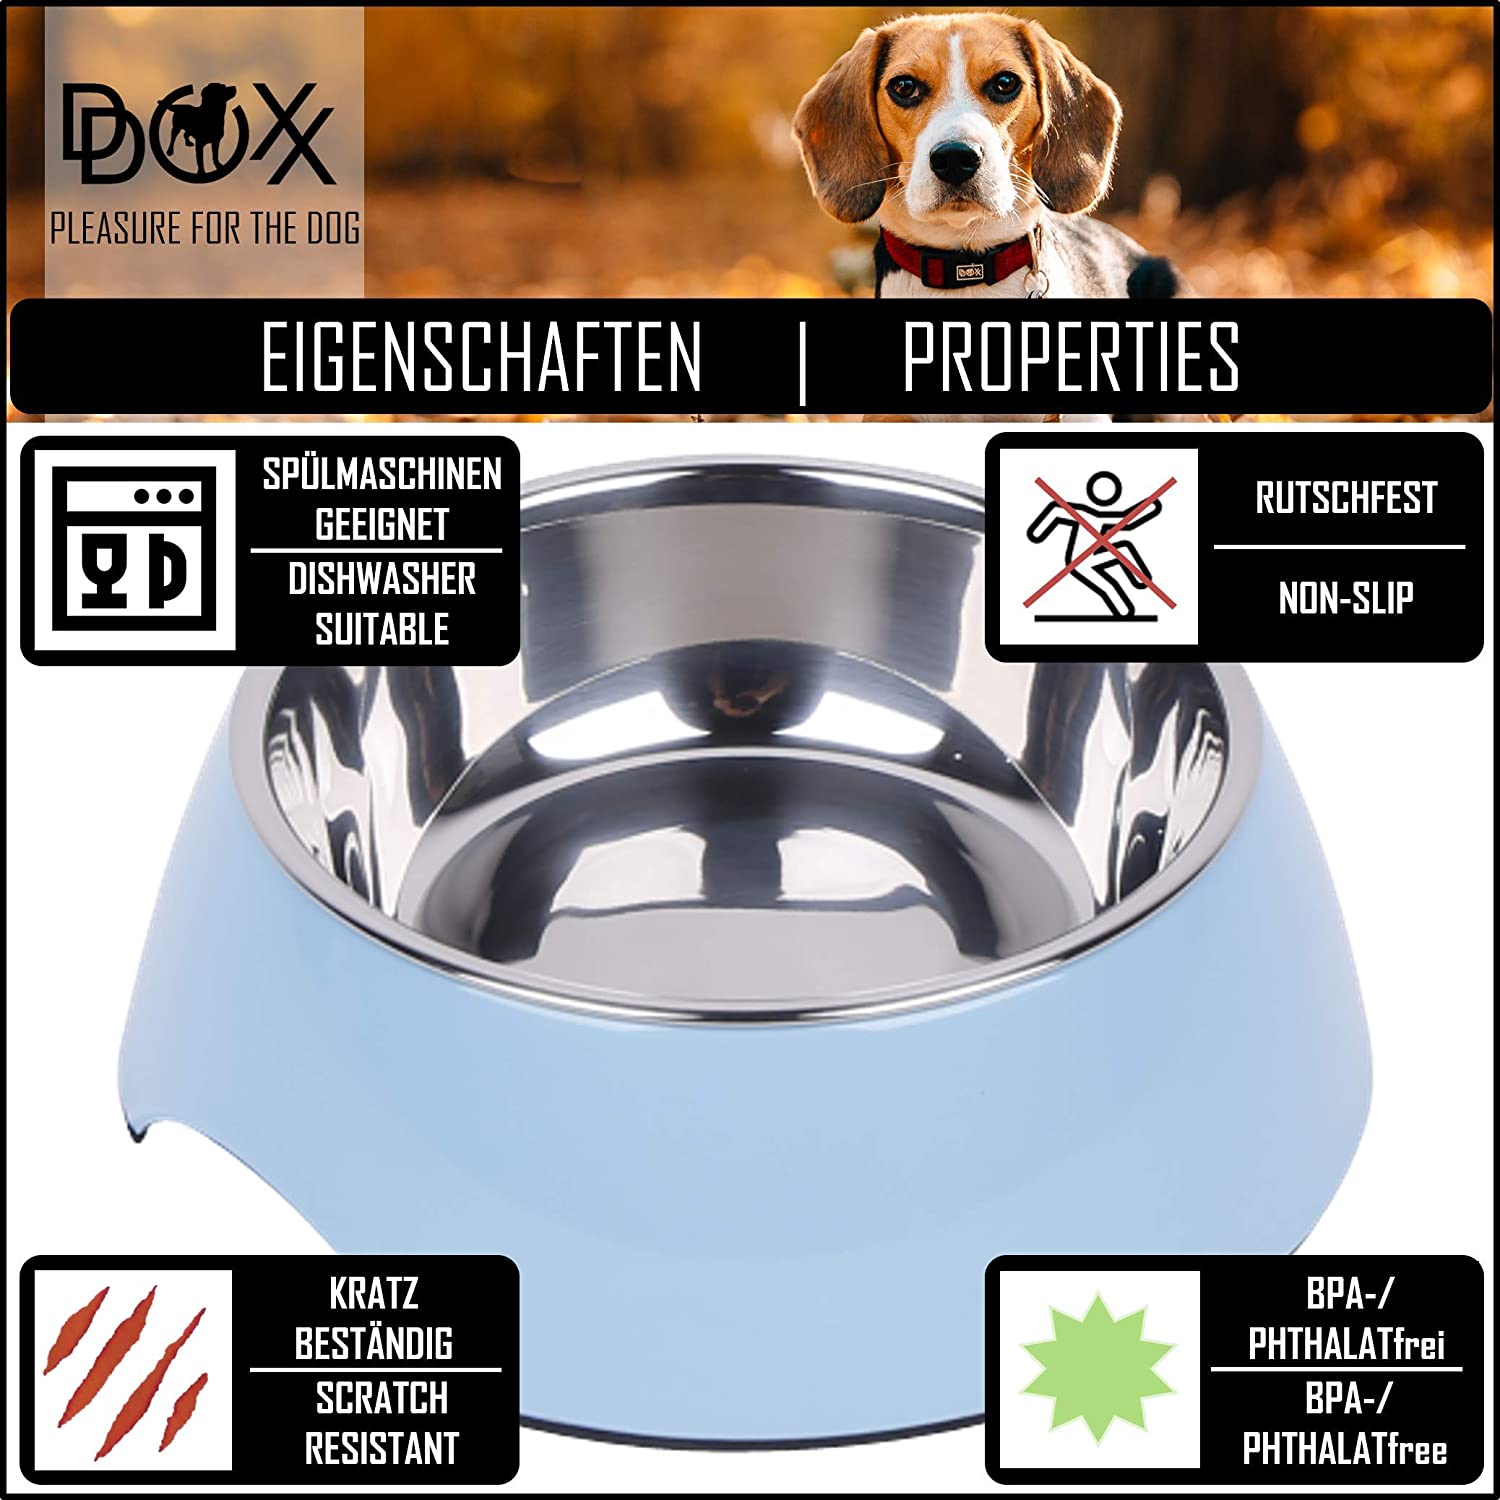  DDOXX Comedero Perro, Antideslizante Tamaños | para Perros Pequeño, Mediano y Grande | Bol Accesorios Acero INOX-Idable Melamina Gato Cachorro | Azul, 160 ml 